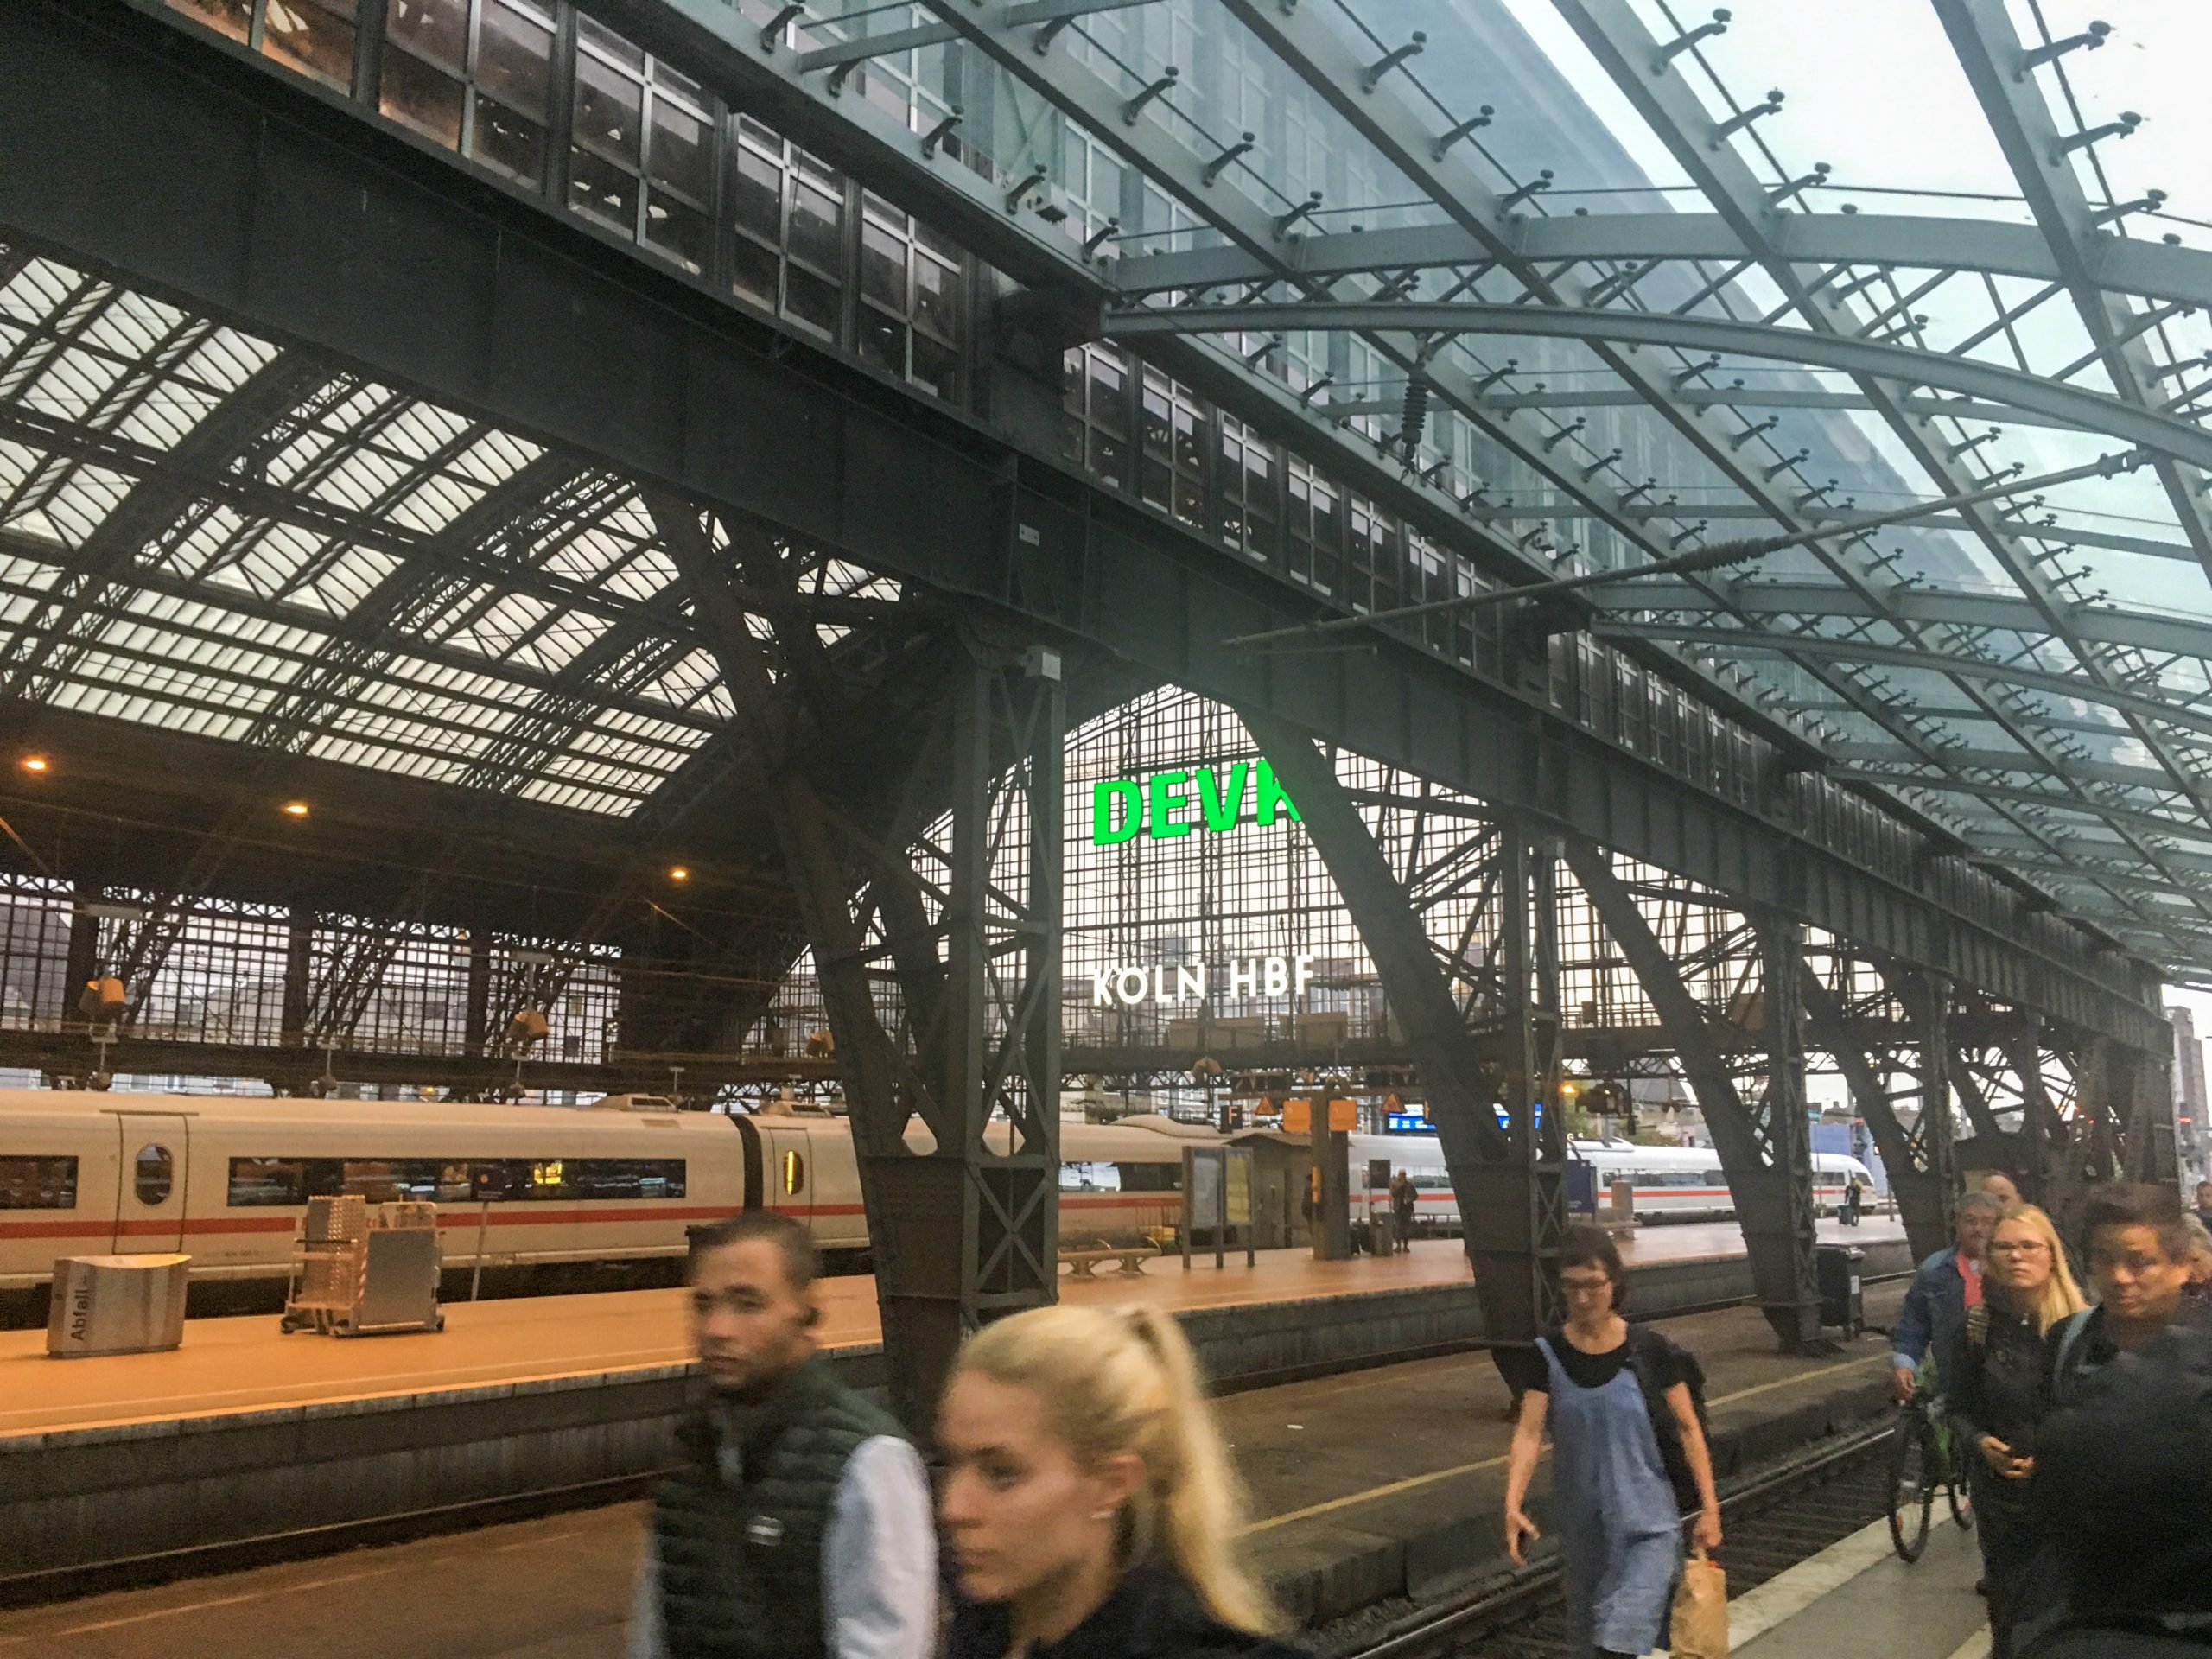 【ドイツ】デュッセルドルフからケルンまでの移動方法を解説!電車での移動がオススメ。チケットの買い方も併せて説明します。